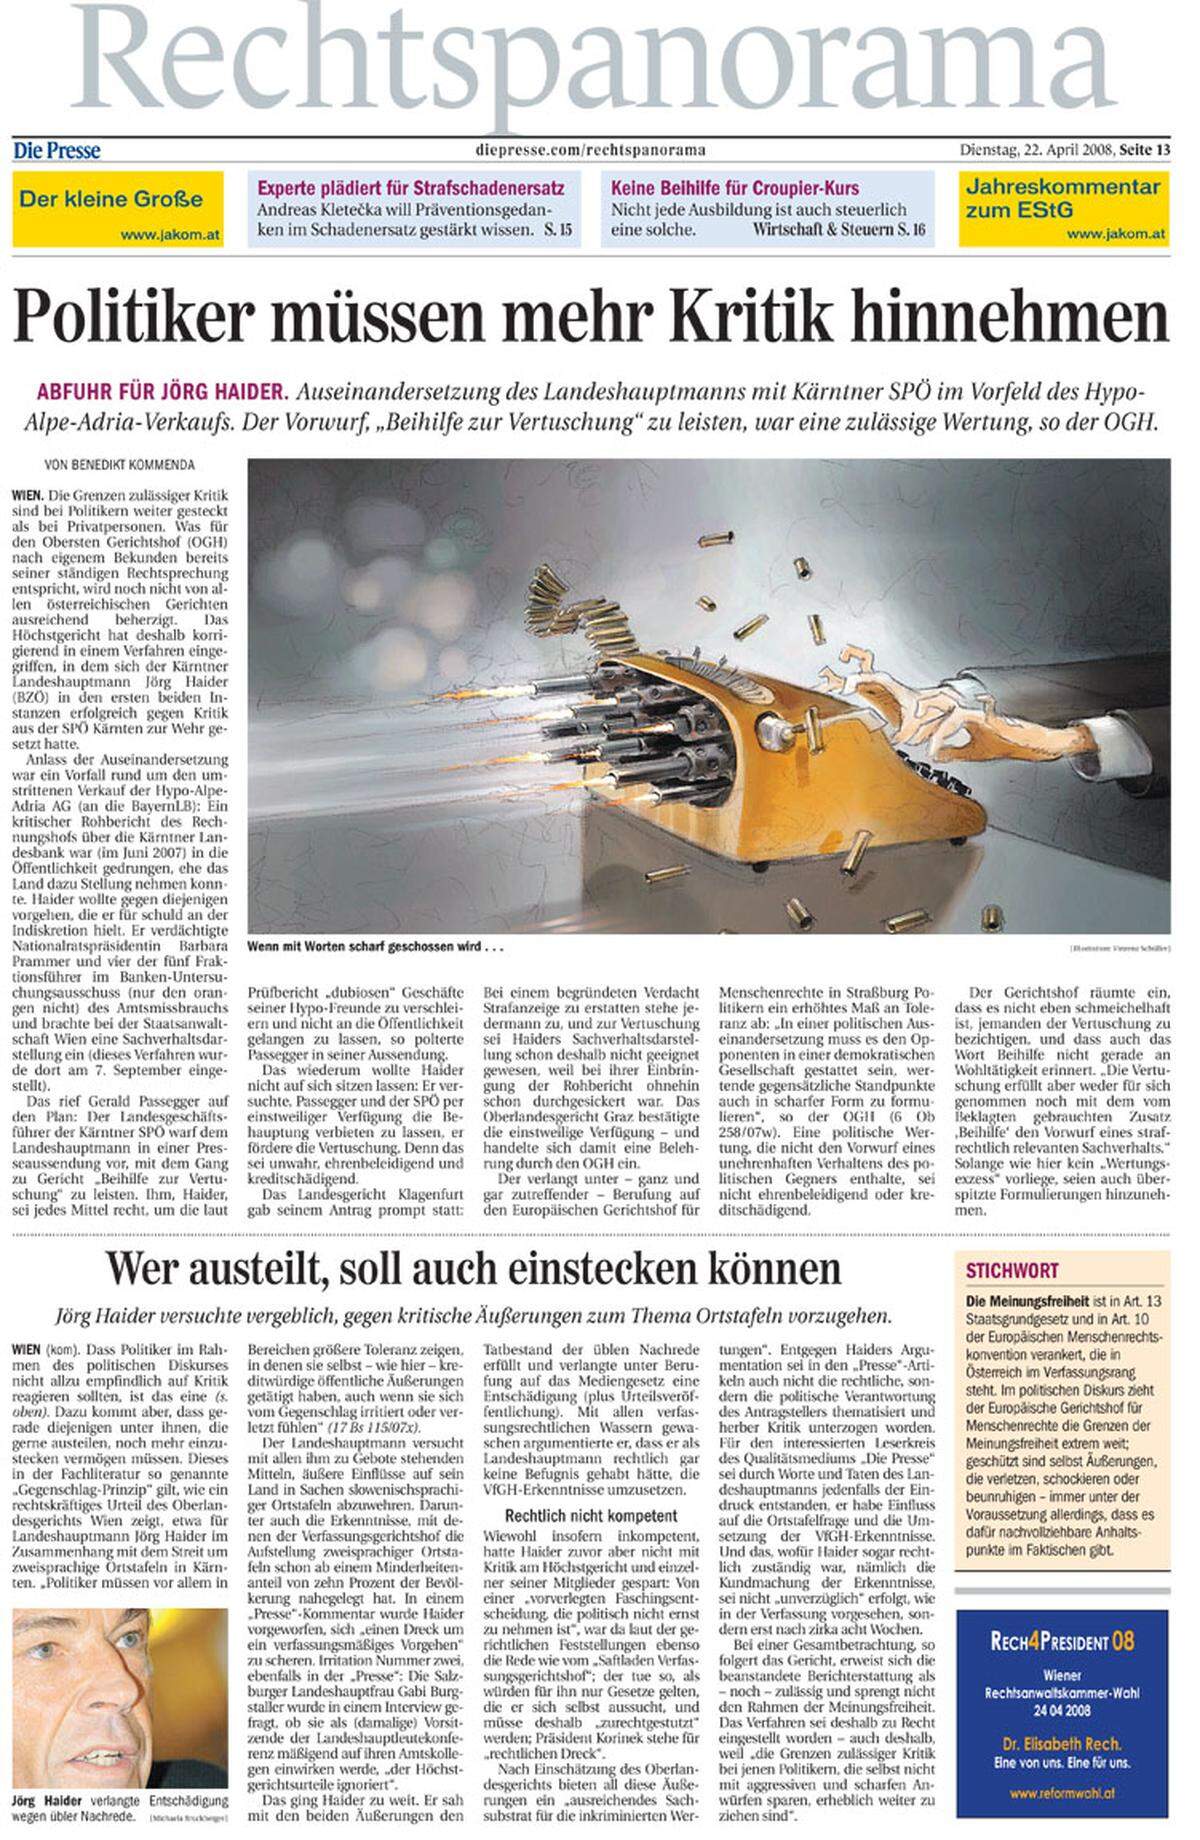 22. April 2008: Der Oberste Gerichtshof sichert die Meinungsfreiheit für Kritik an Politikern, sehr anschaulich illustriert durch Vinzenz Schüller.